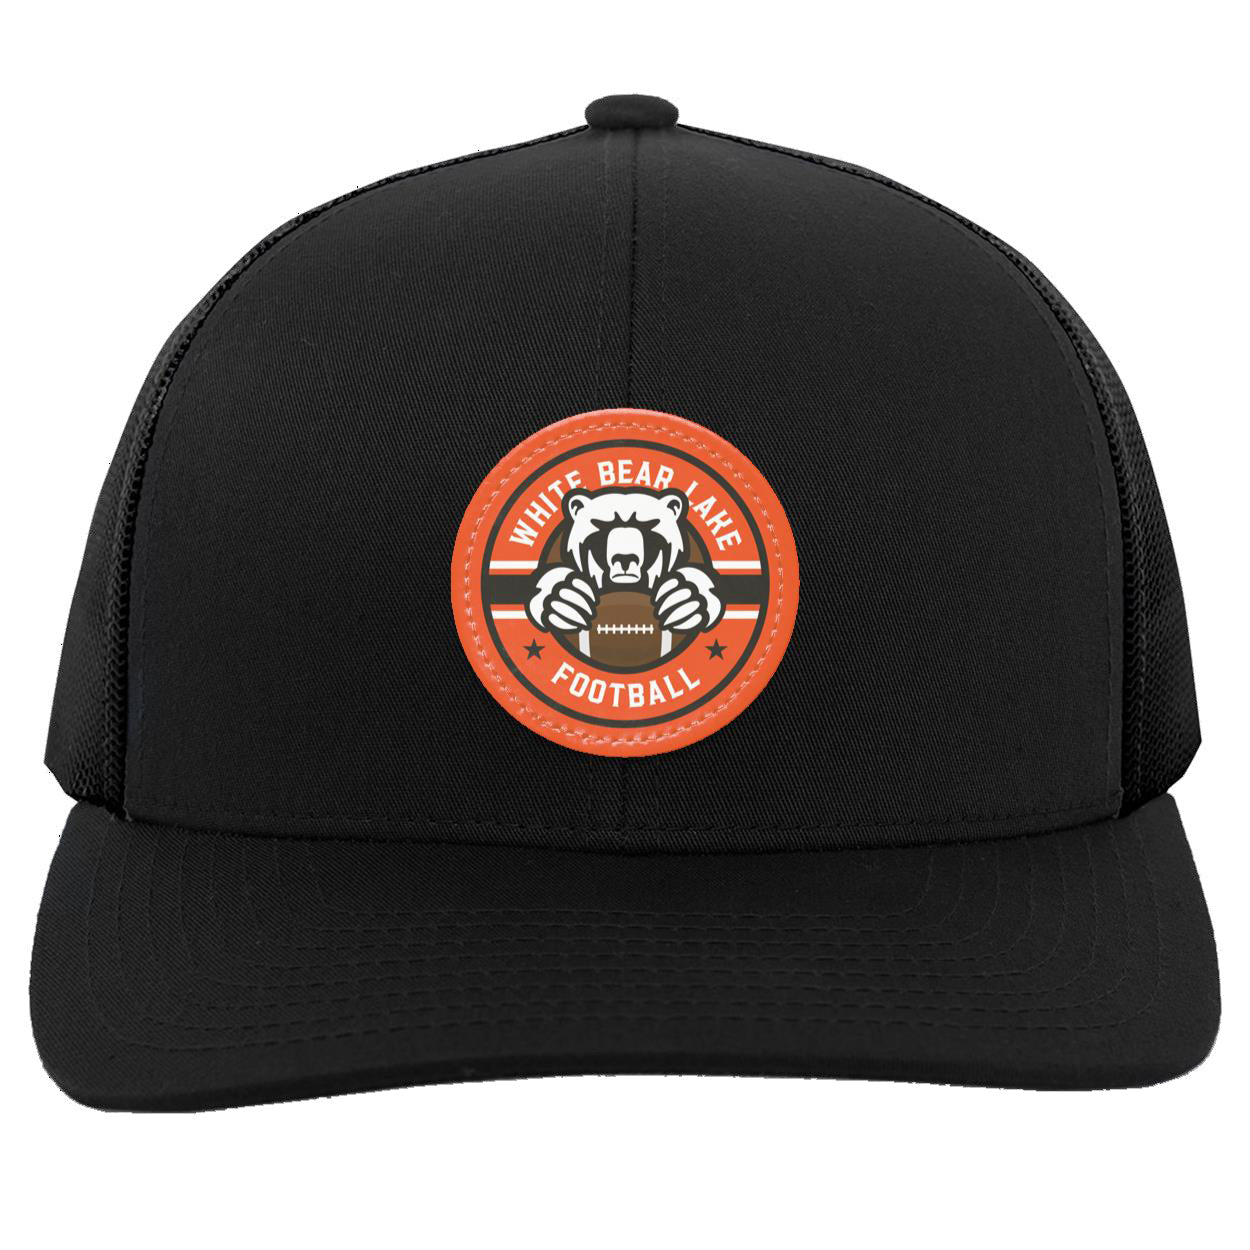 WBL Football Snapback Trucker Patch Hat